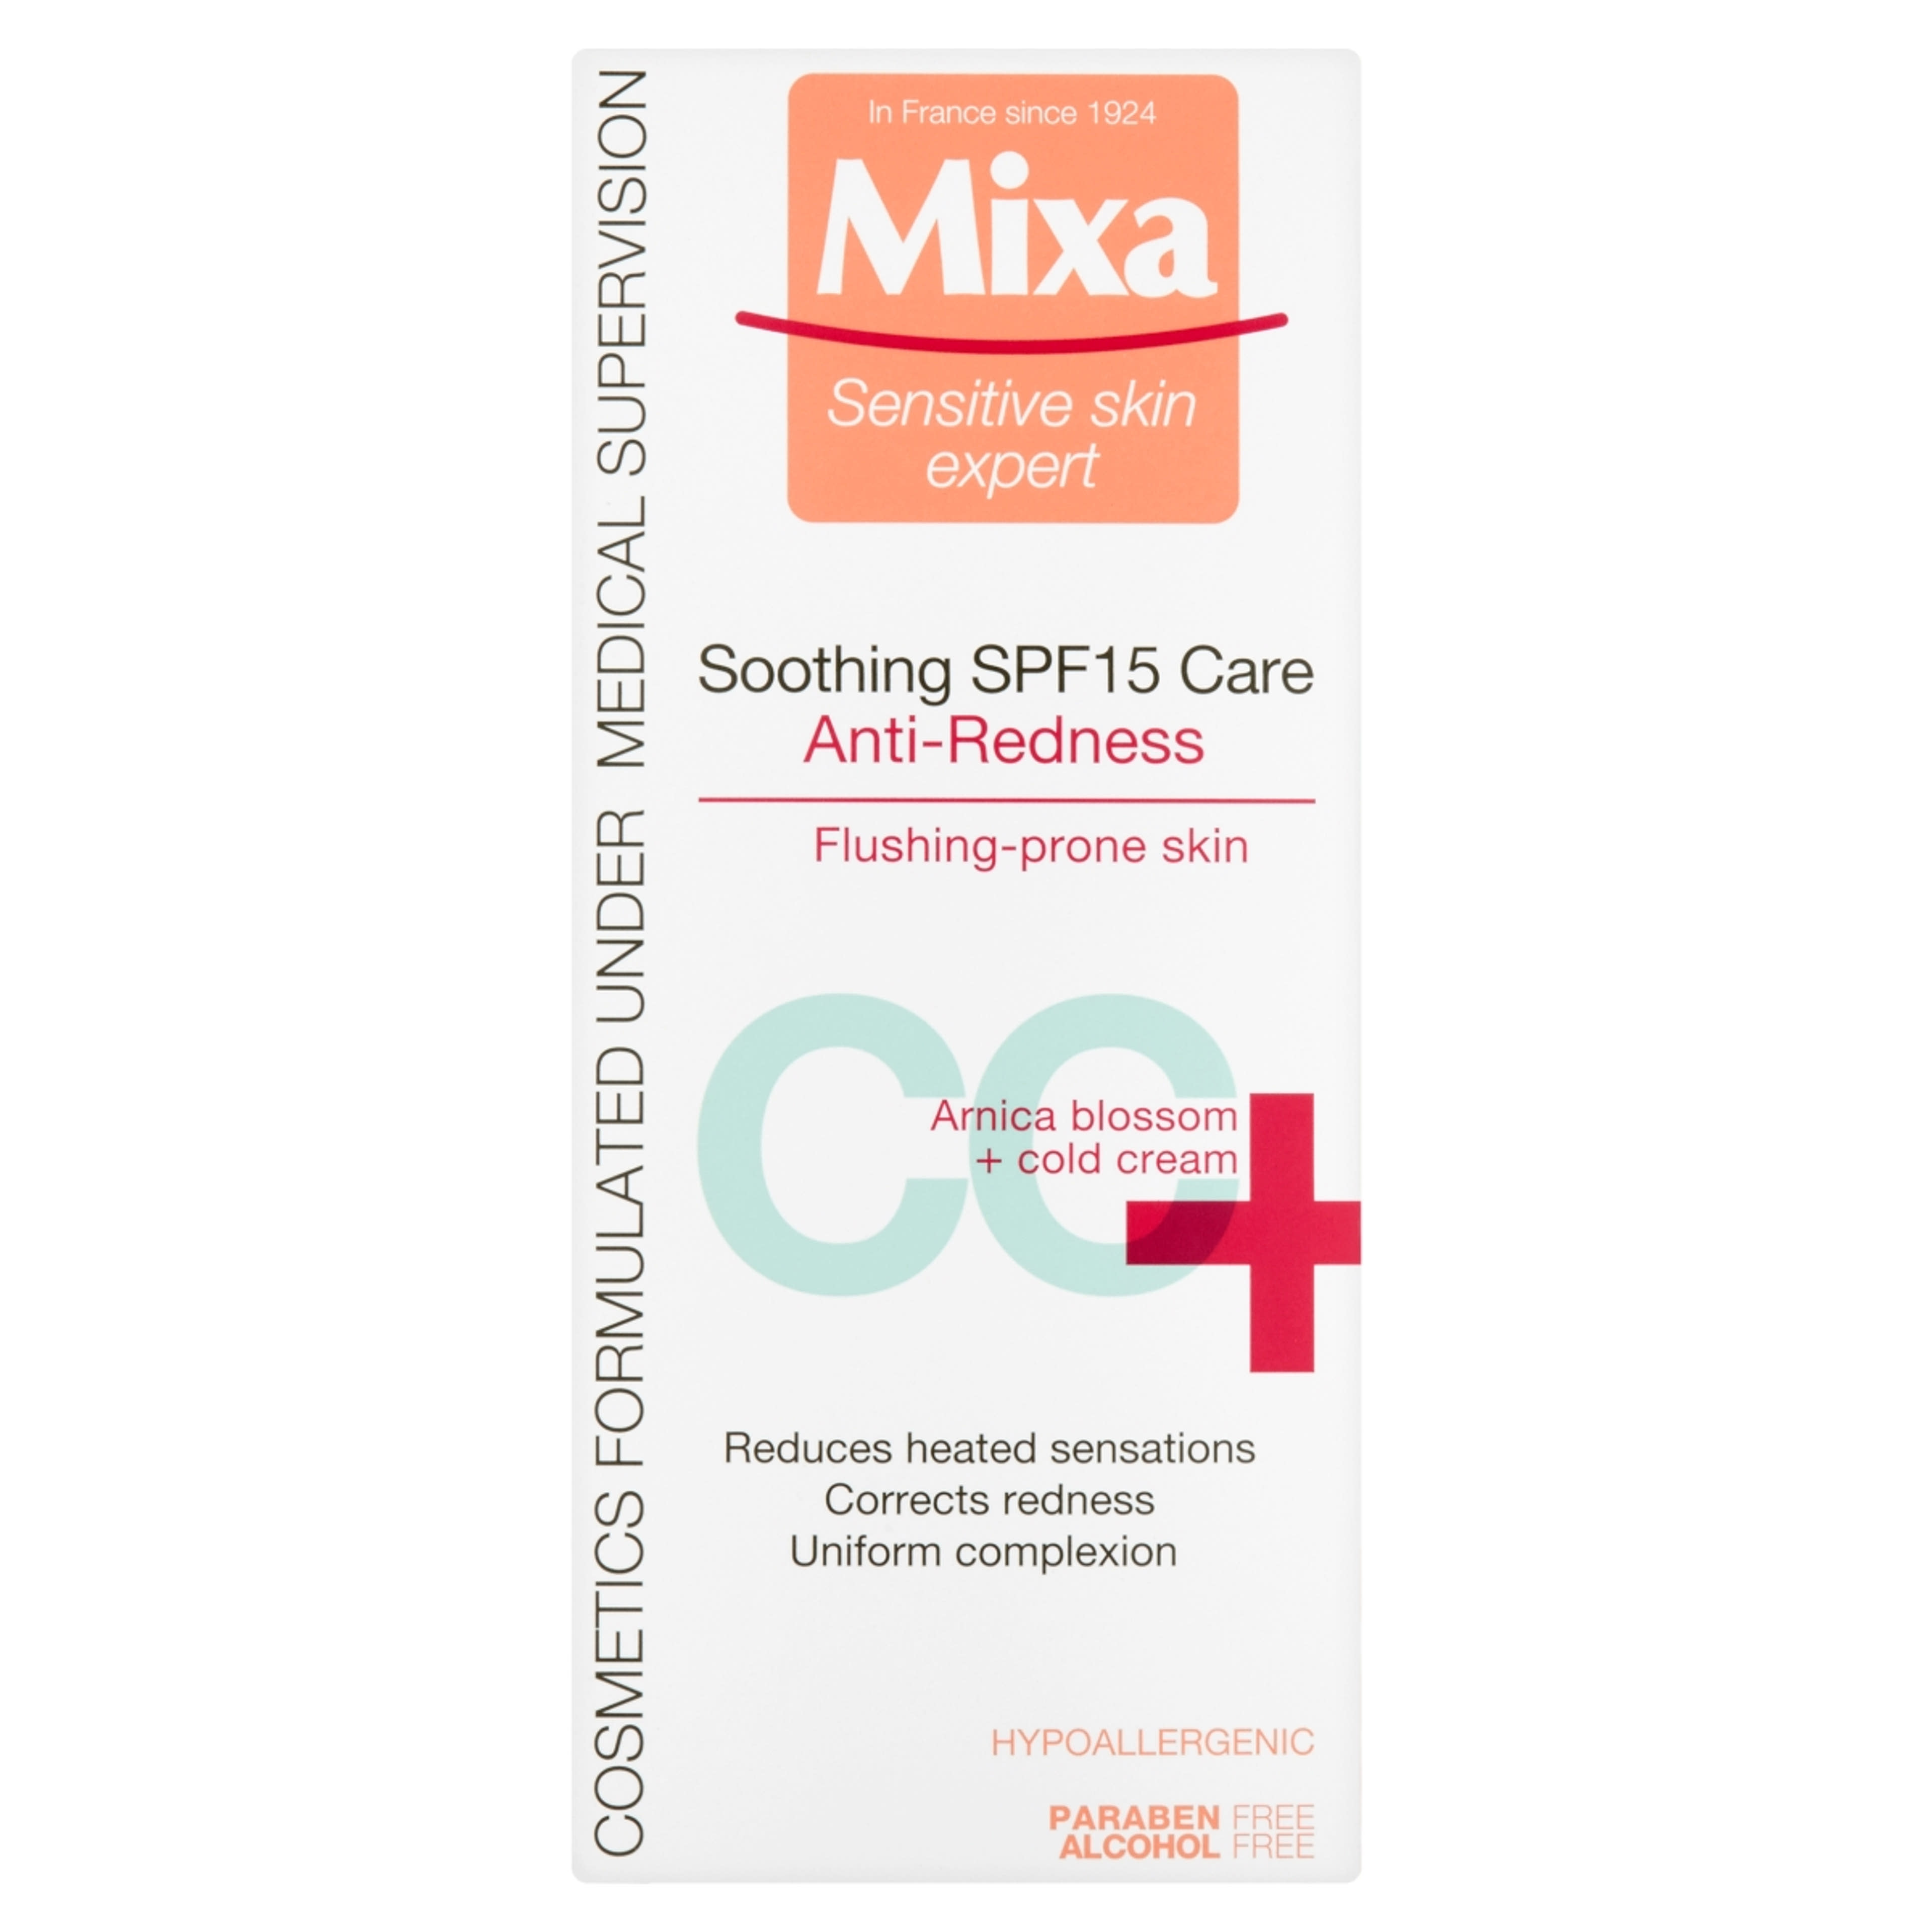 Mixa Anti-Redness kipirosodás elleni, bőrnyugtató ápoló, SPF 15-tel - 50 ml